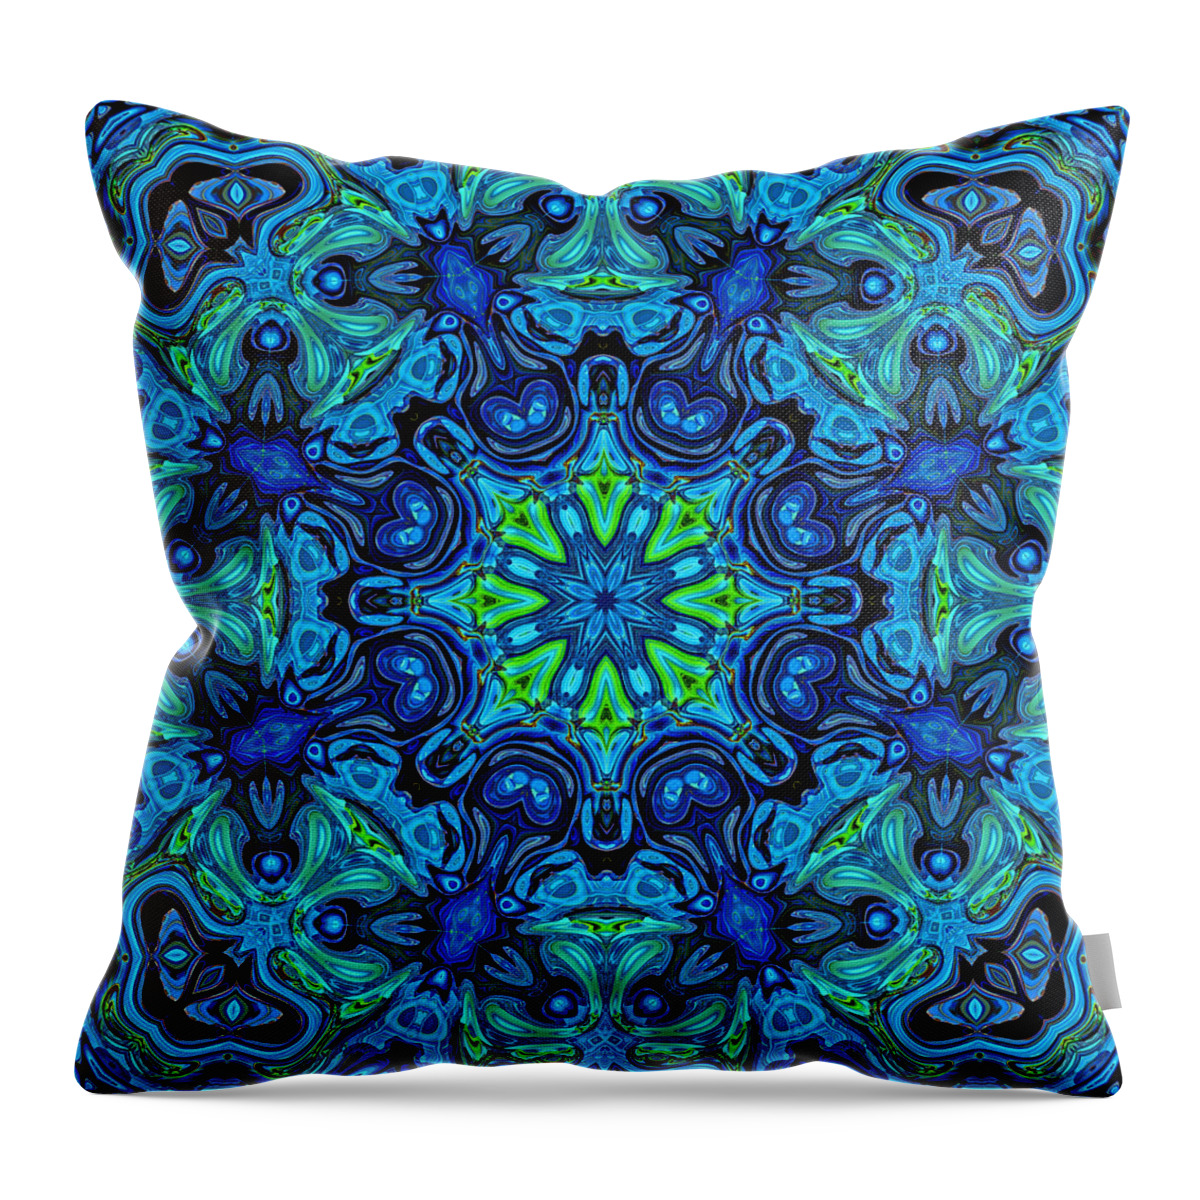 Blue Throw Pillow featuring the digital art So Blue - 04v2 - Mandala by Aimelle Ml